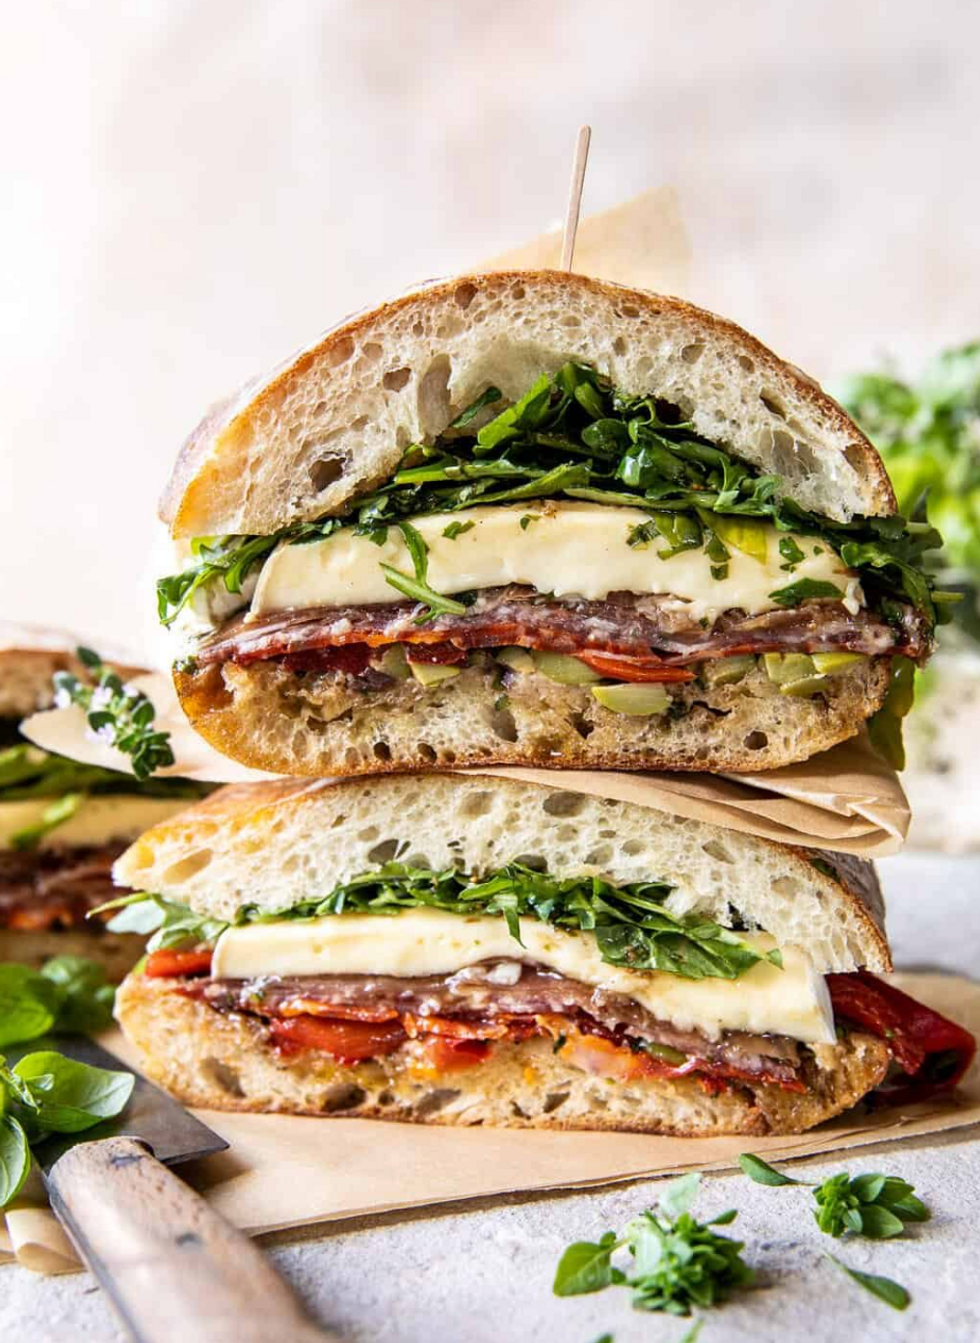 Brie and Prosciutto Sandwich recipe